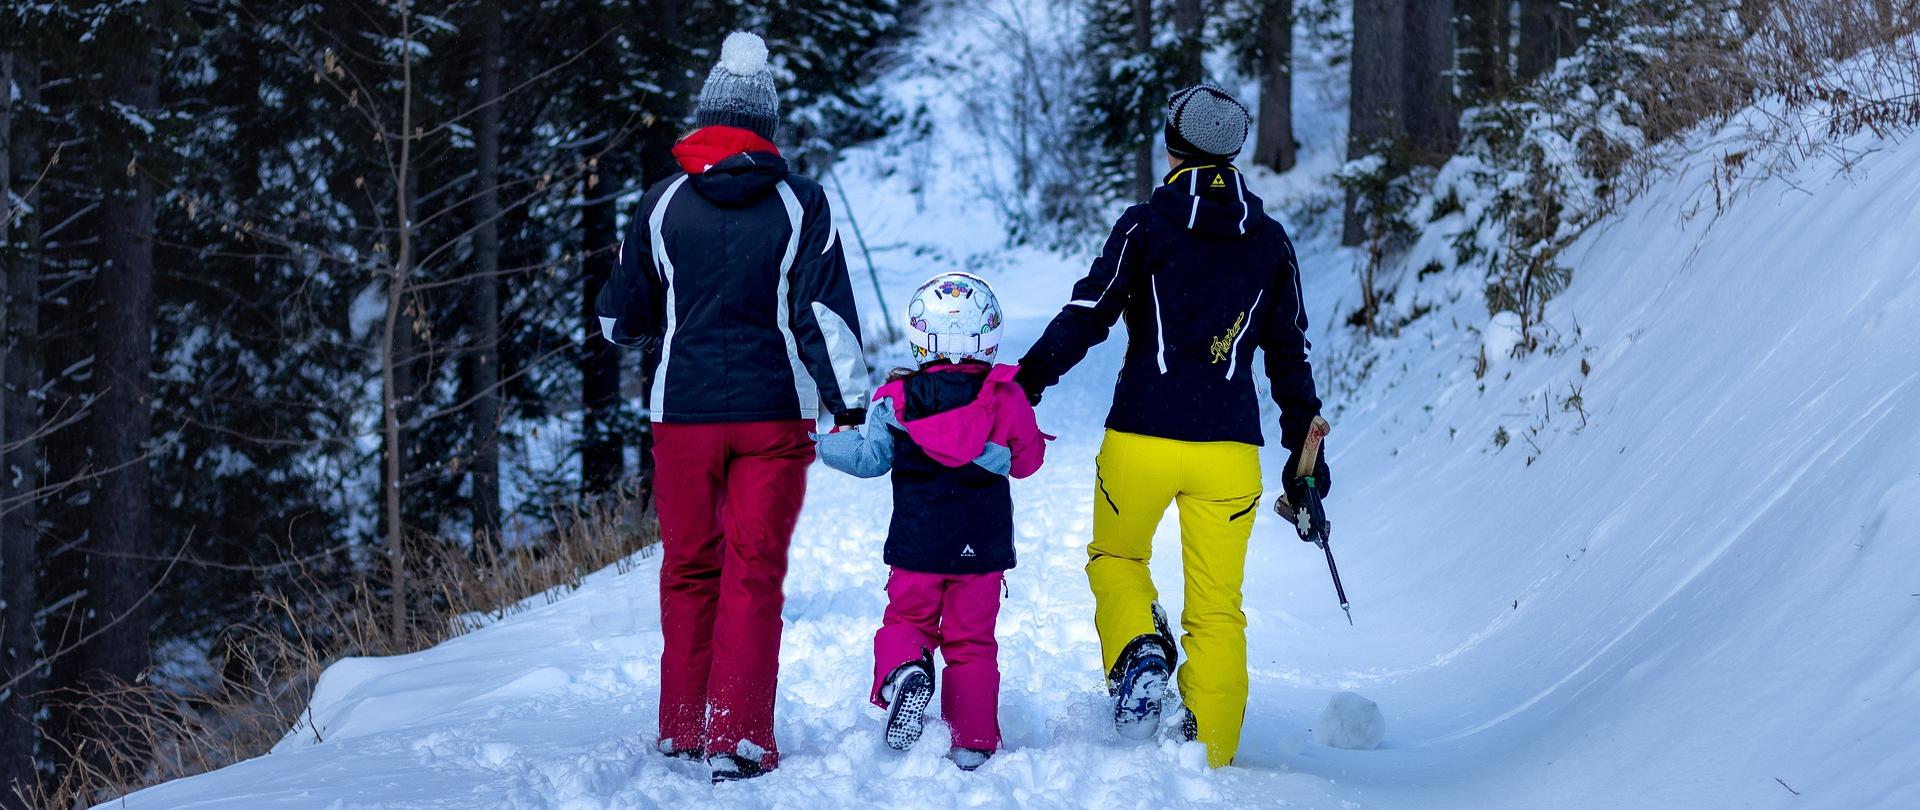 Przedstawiono rodzinę ubraną w zimową odzież podczas spaceru